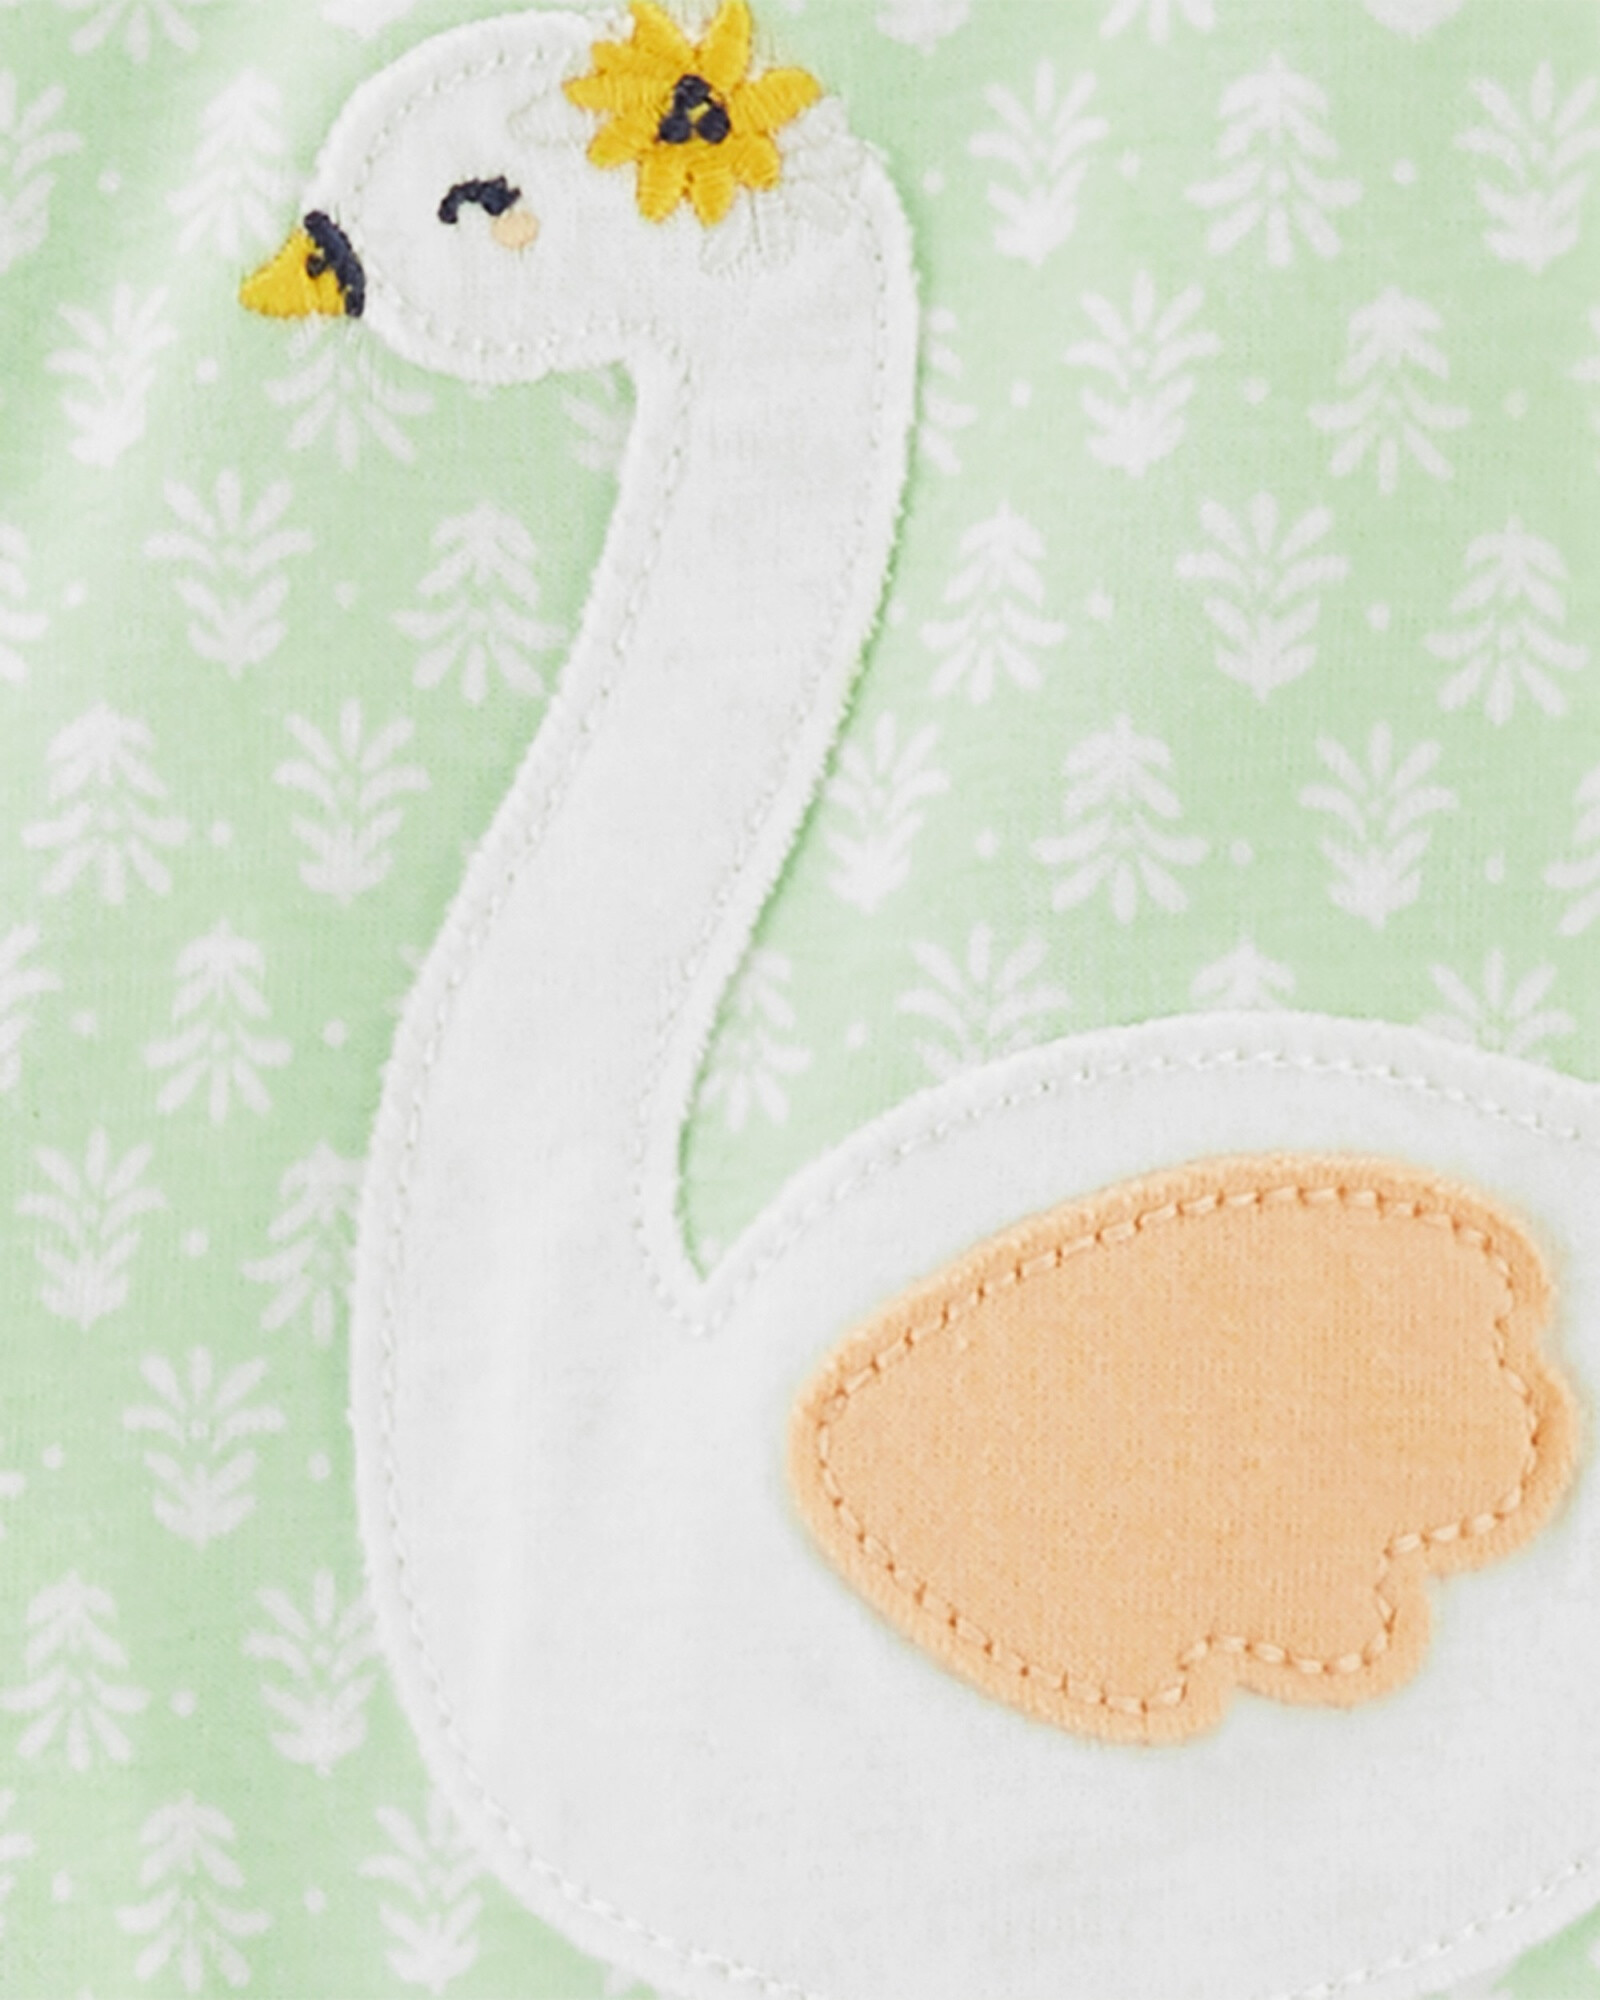 Pijama una pieza de algodón con pie, estampa cisne Sin color